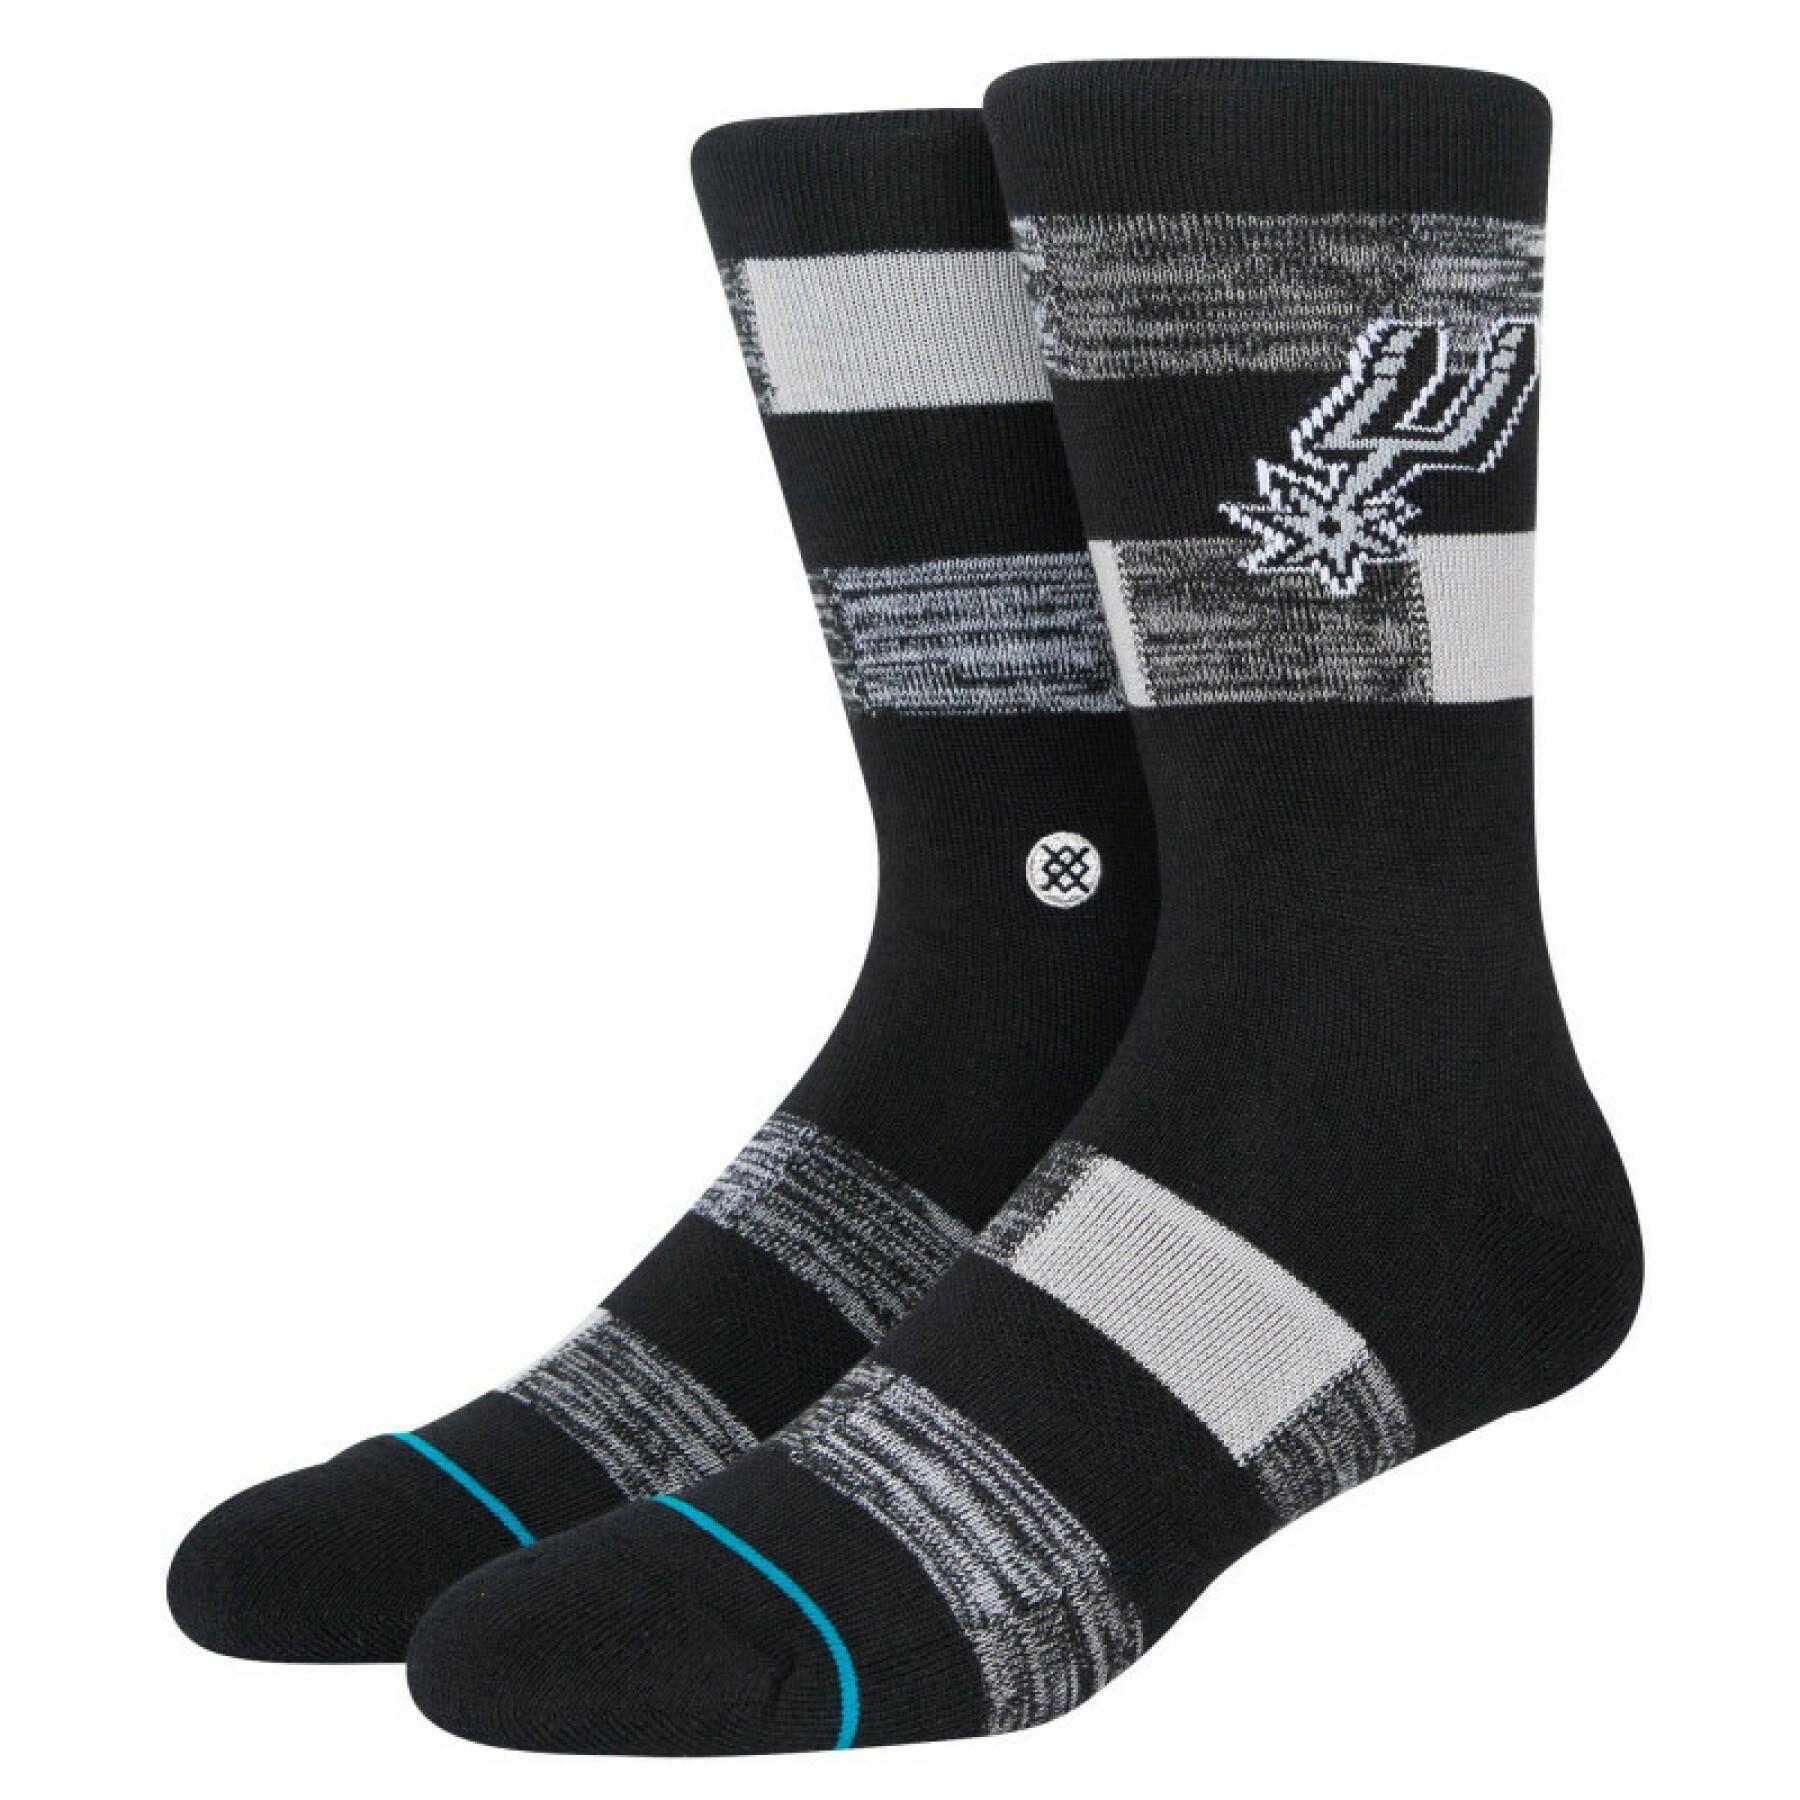 Socks San Antonio Spurs Cryptic